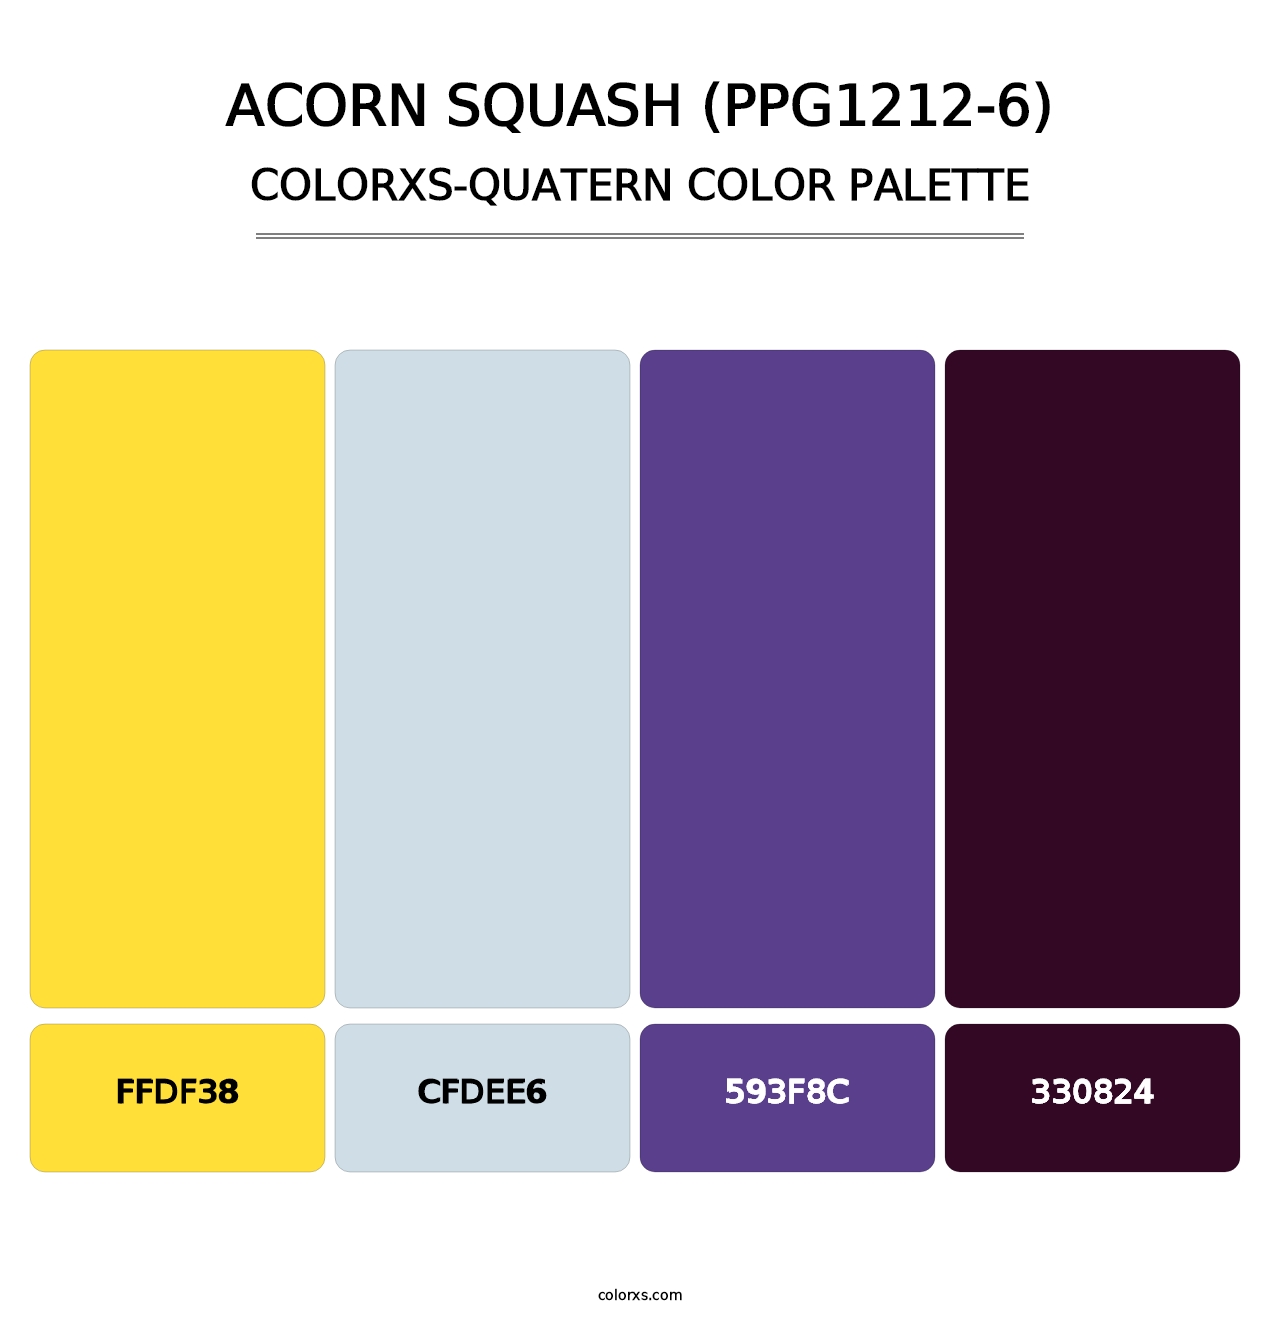 Acorn Squash (PPG1212-6) - Colorxs Quatern Palette